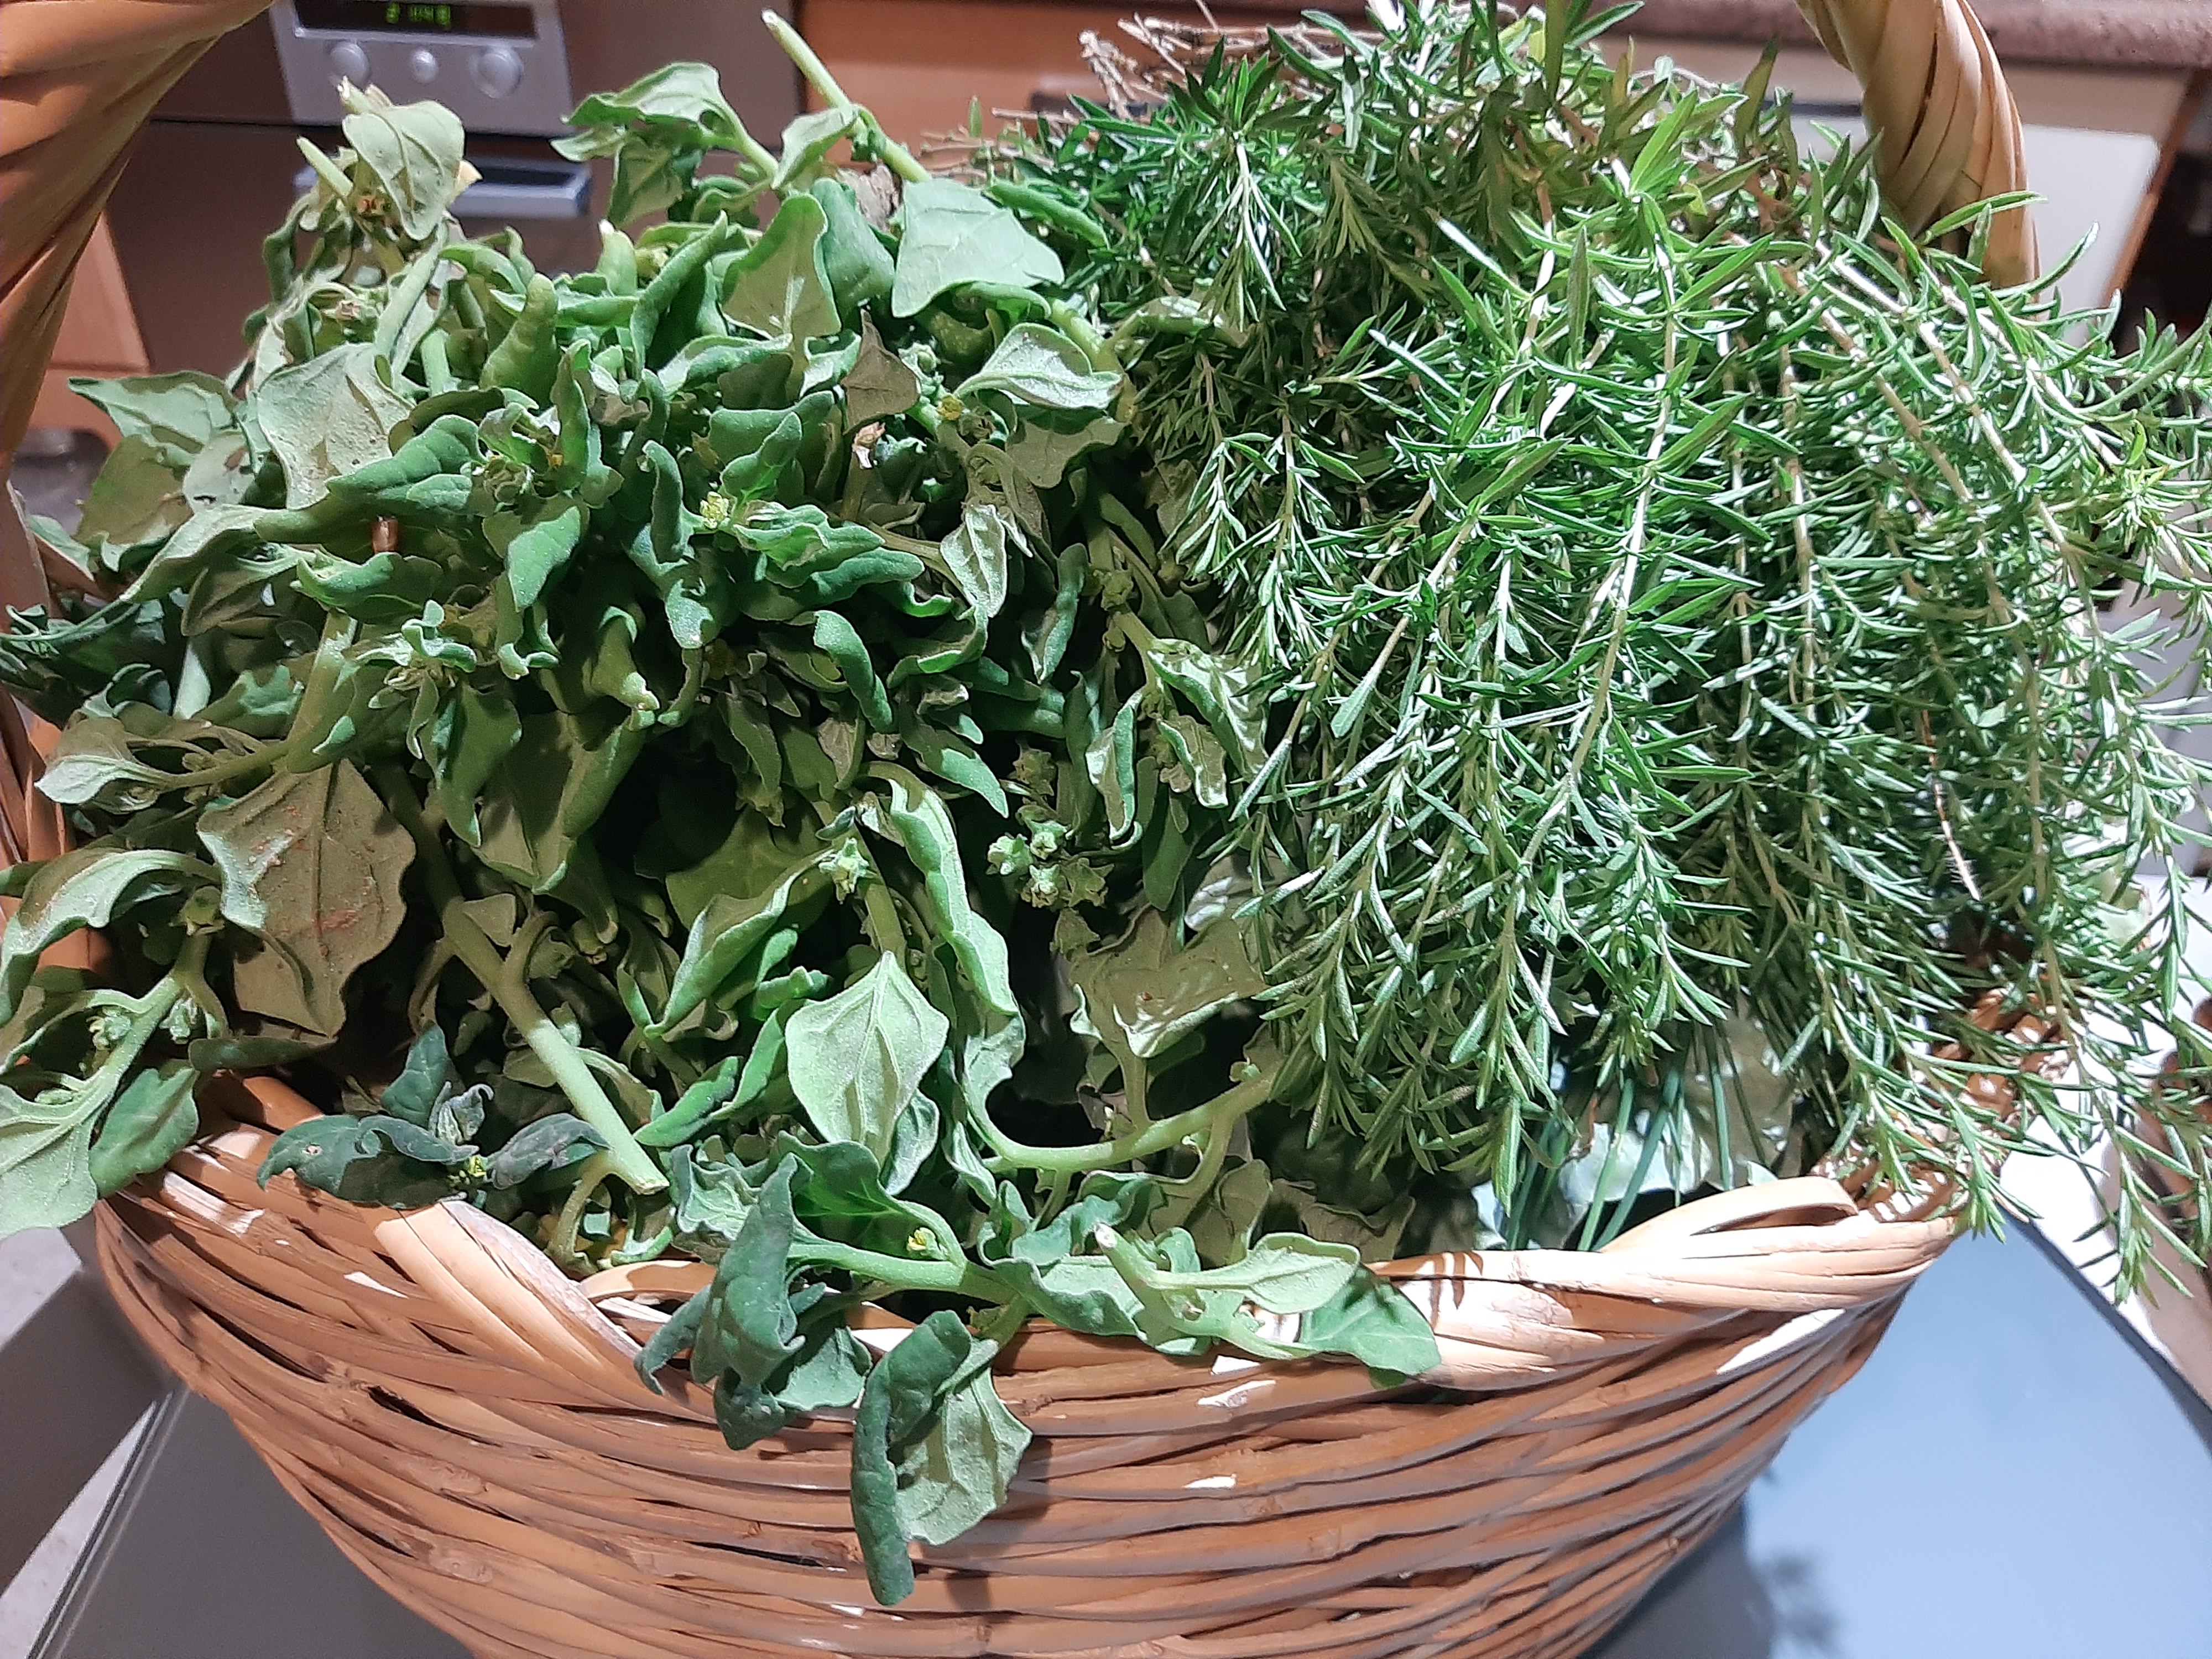 Colhem-se legumes e aromáticas para a banca da Horta AE4O e confeção da sopa para o jantar do Science Fest.